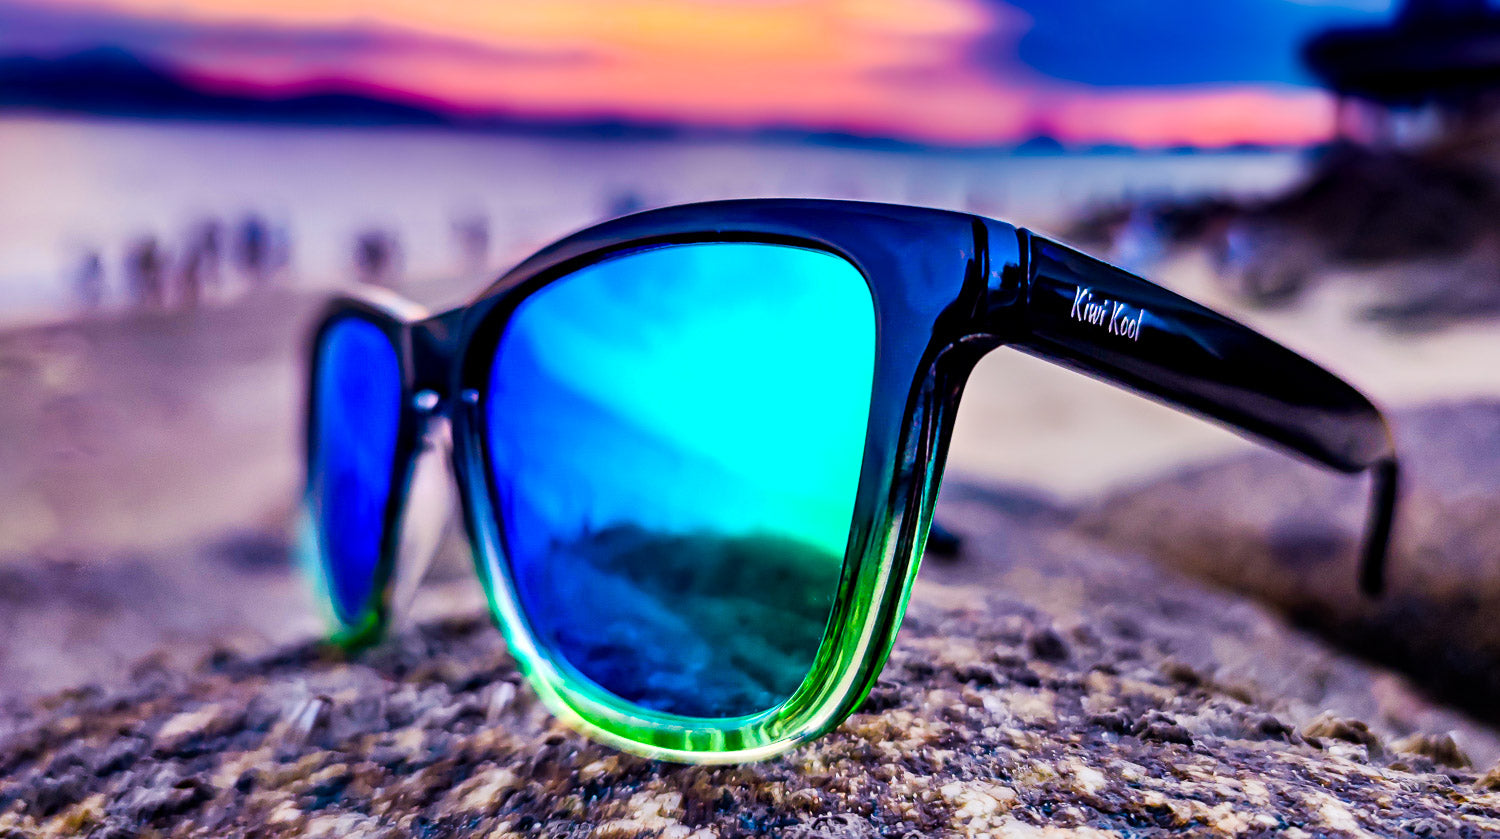 Polarized Sunglasses for Men & Women. Kiwi Kool